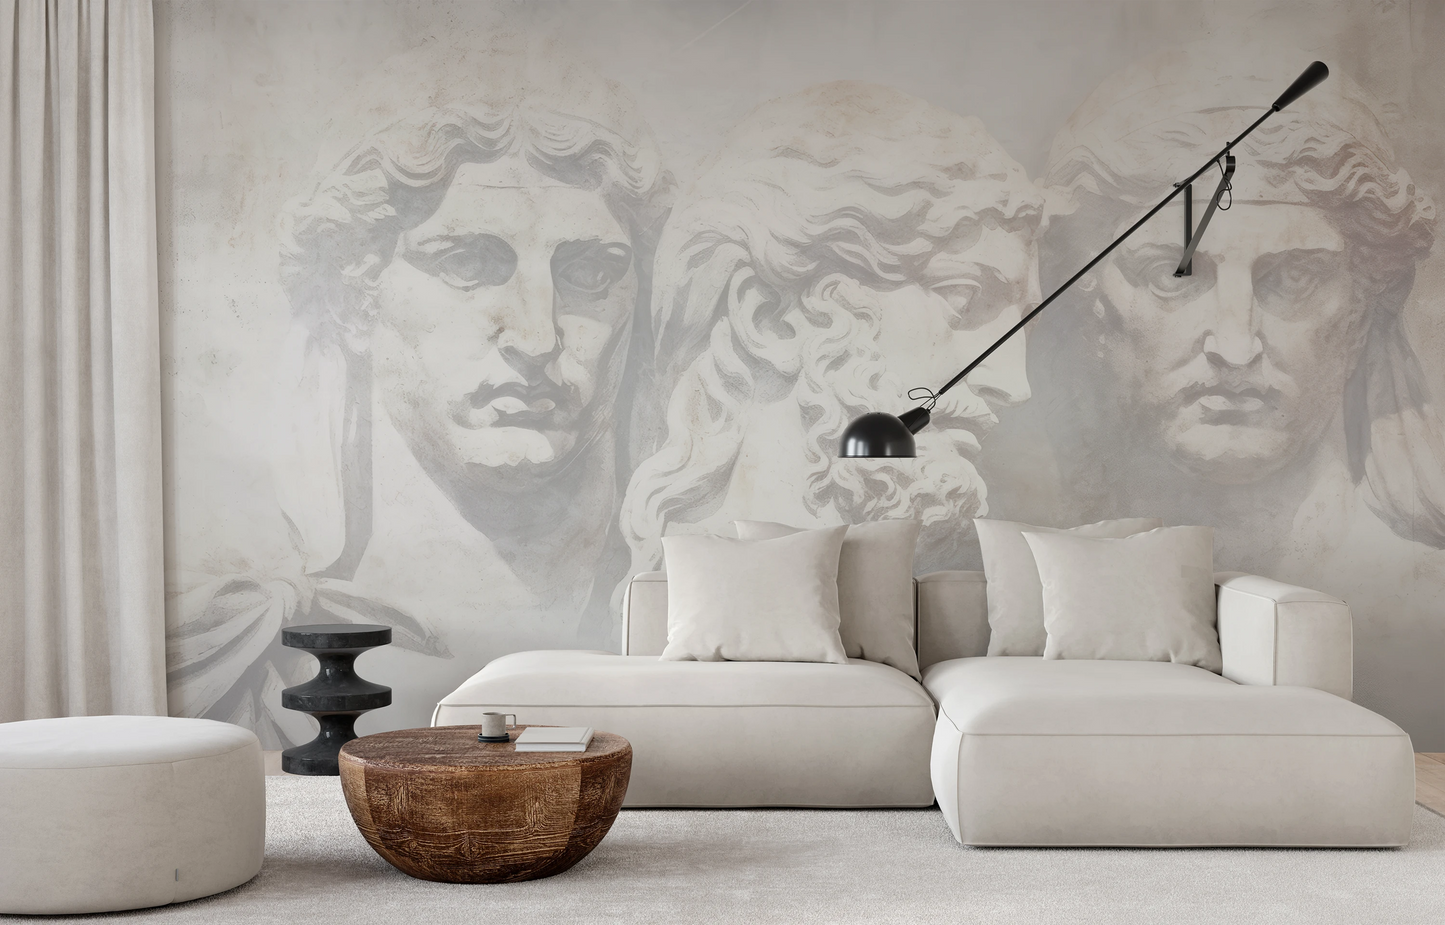 Wzór fototapety artystycznej o nazwie Grecian Serenity pokazanej w aranżacji wnętrza.